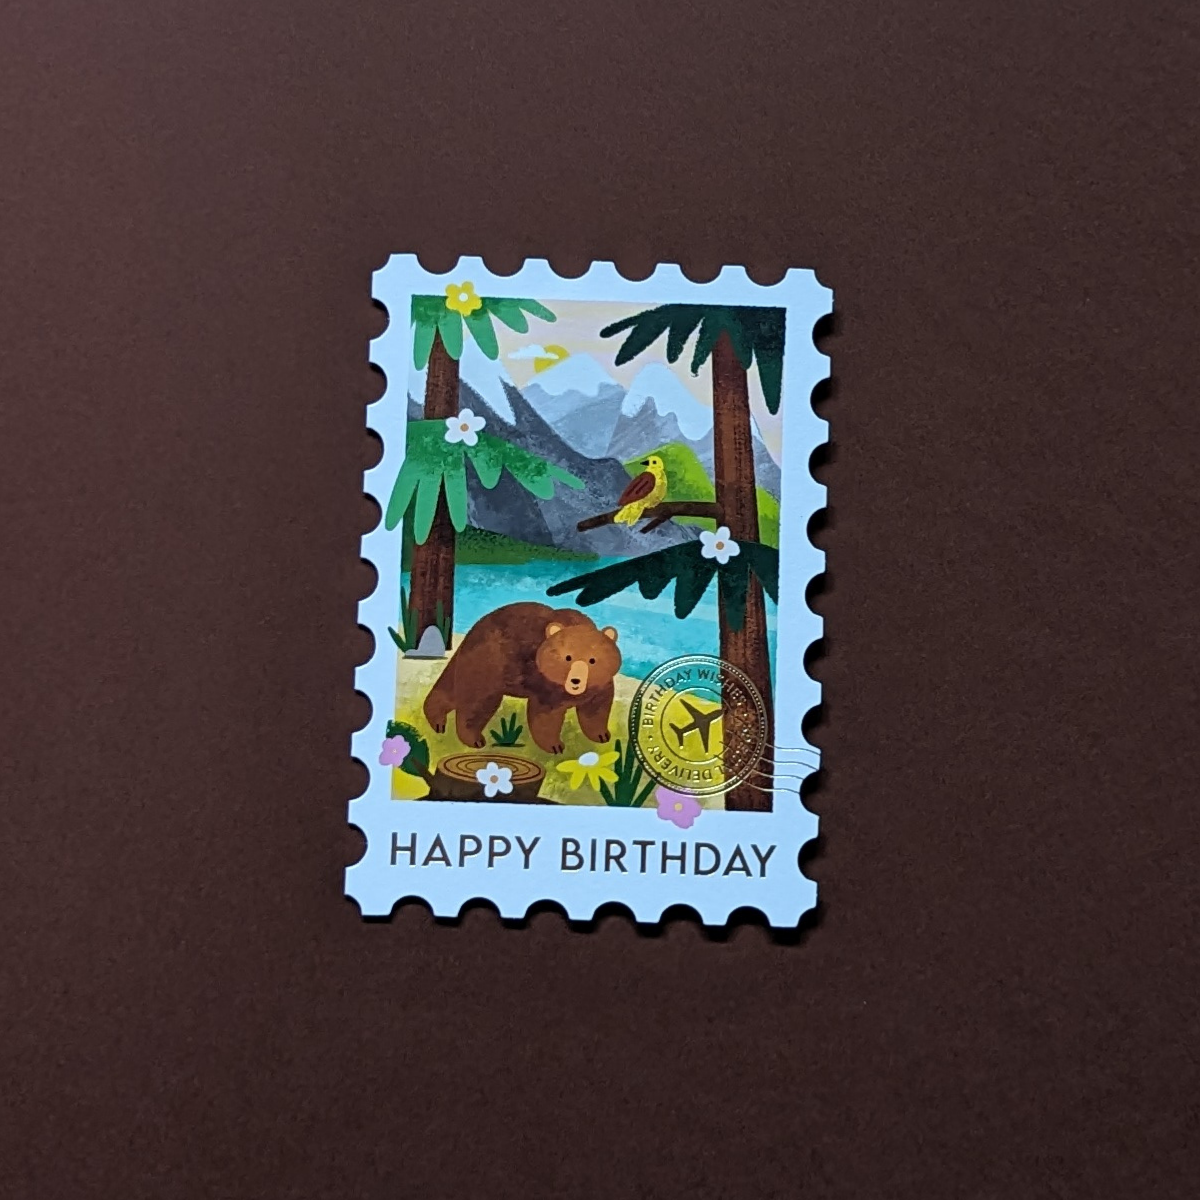 L’illustration des Rocheuses canadiennes sur cette carte découpée en forme de timbre est rehaussée d'un cachet postal doré et d'un message d’anniversaire.